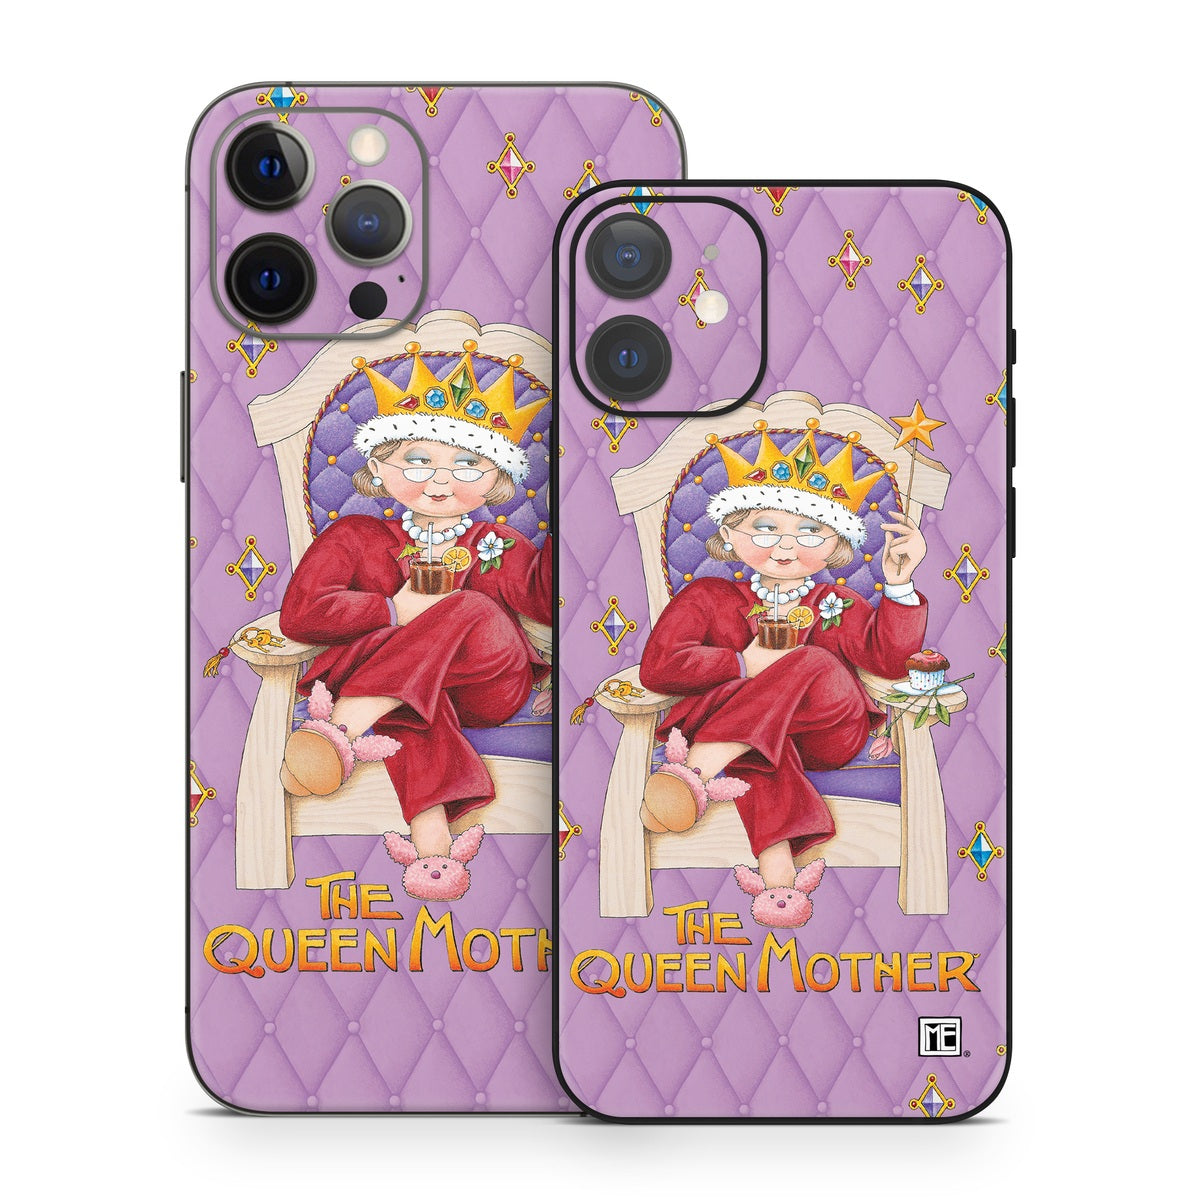 Queen Mother - Apple iPhone 12 Skin